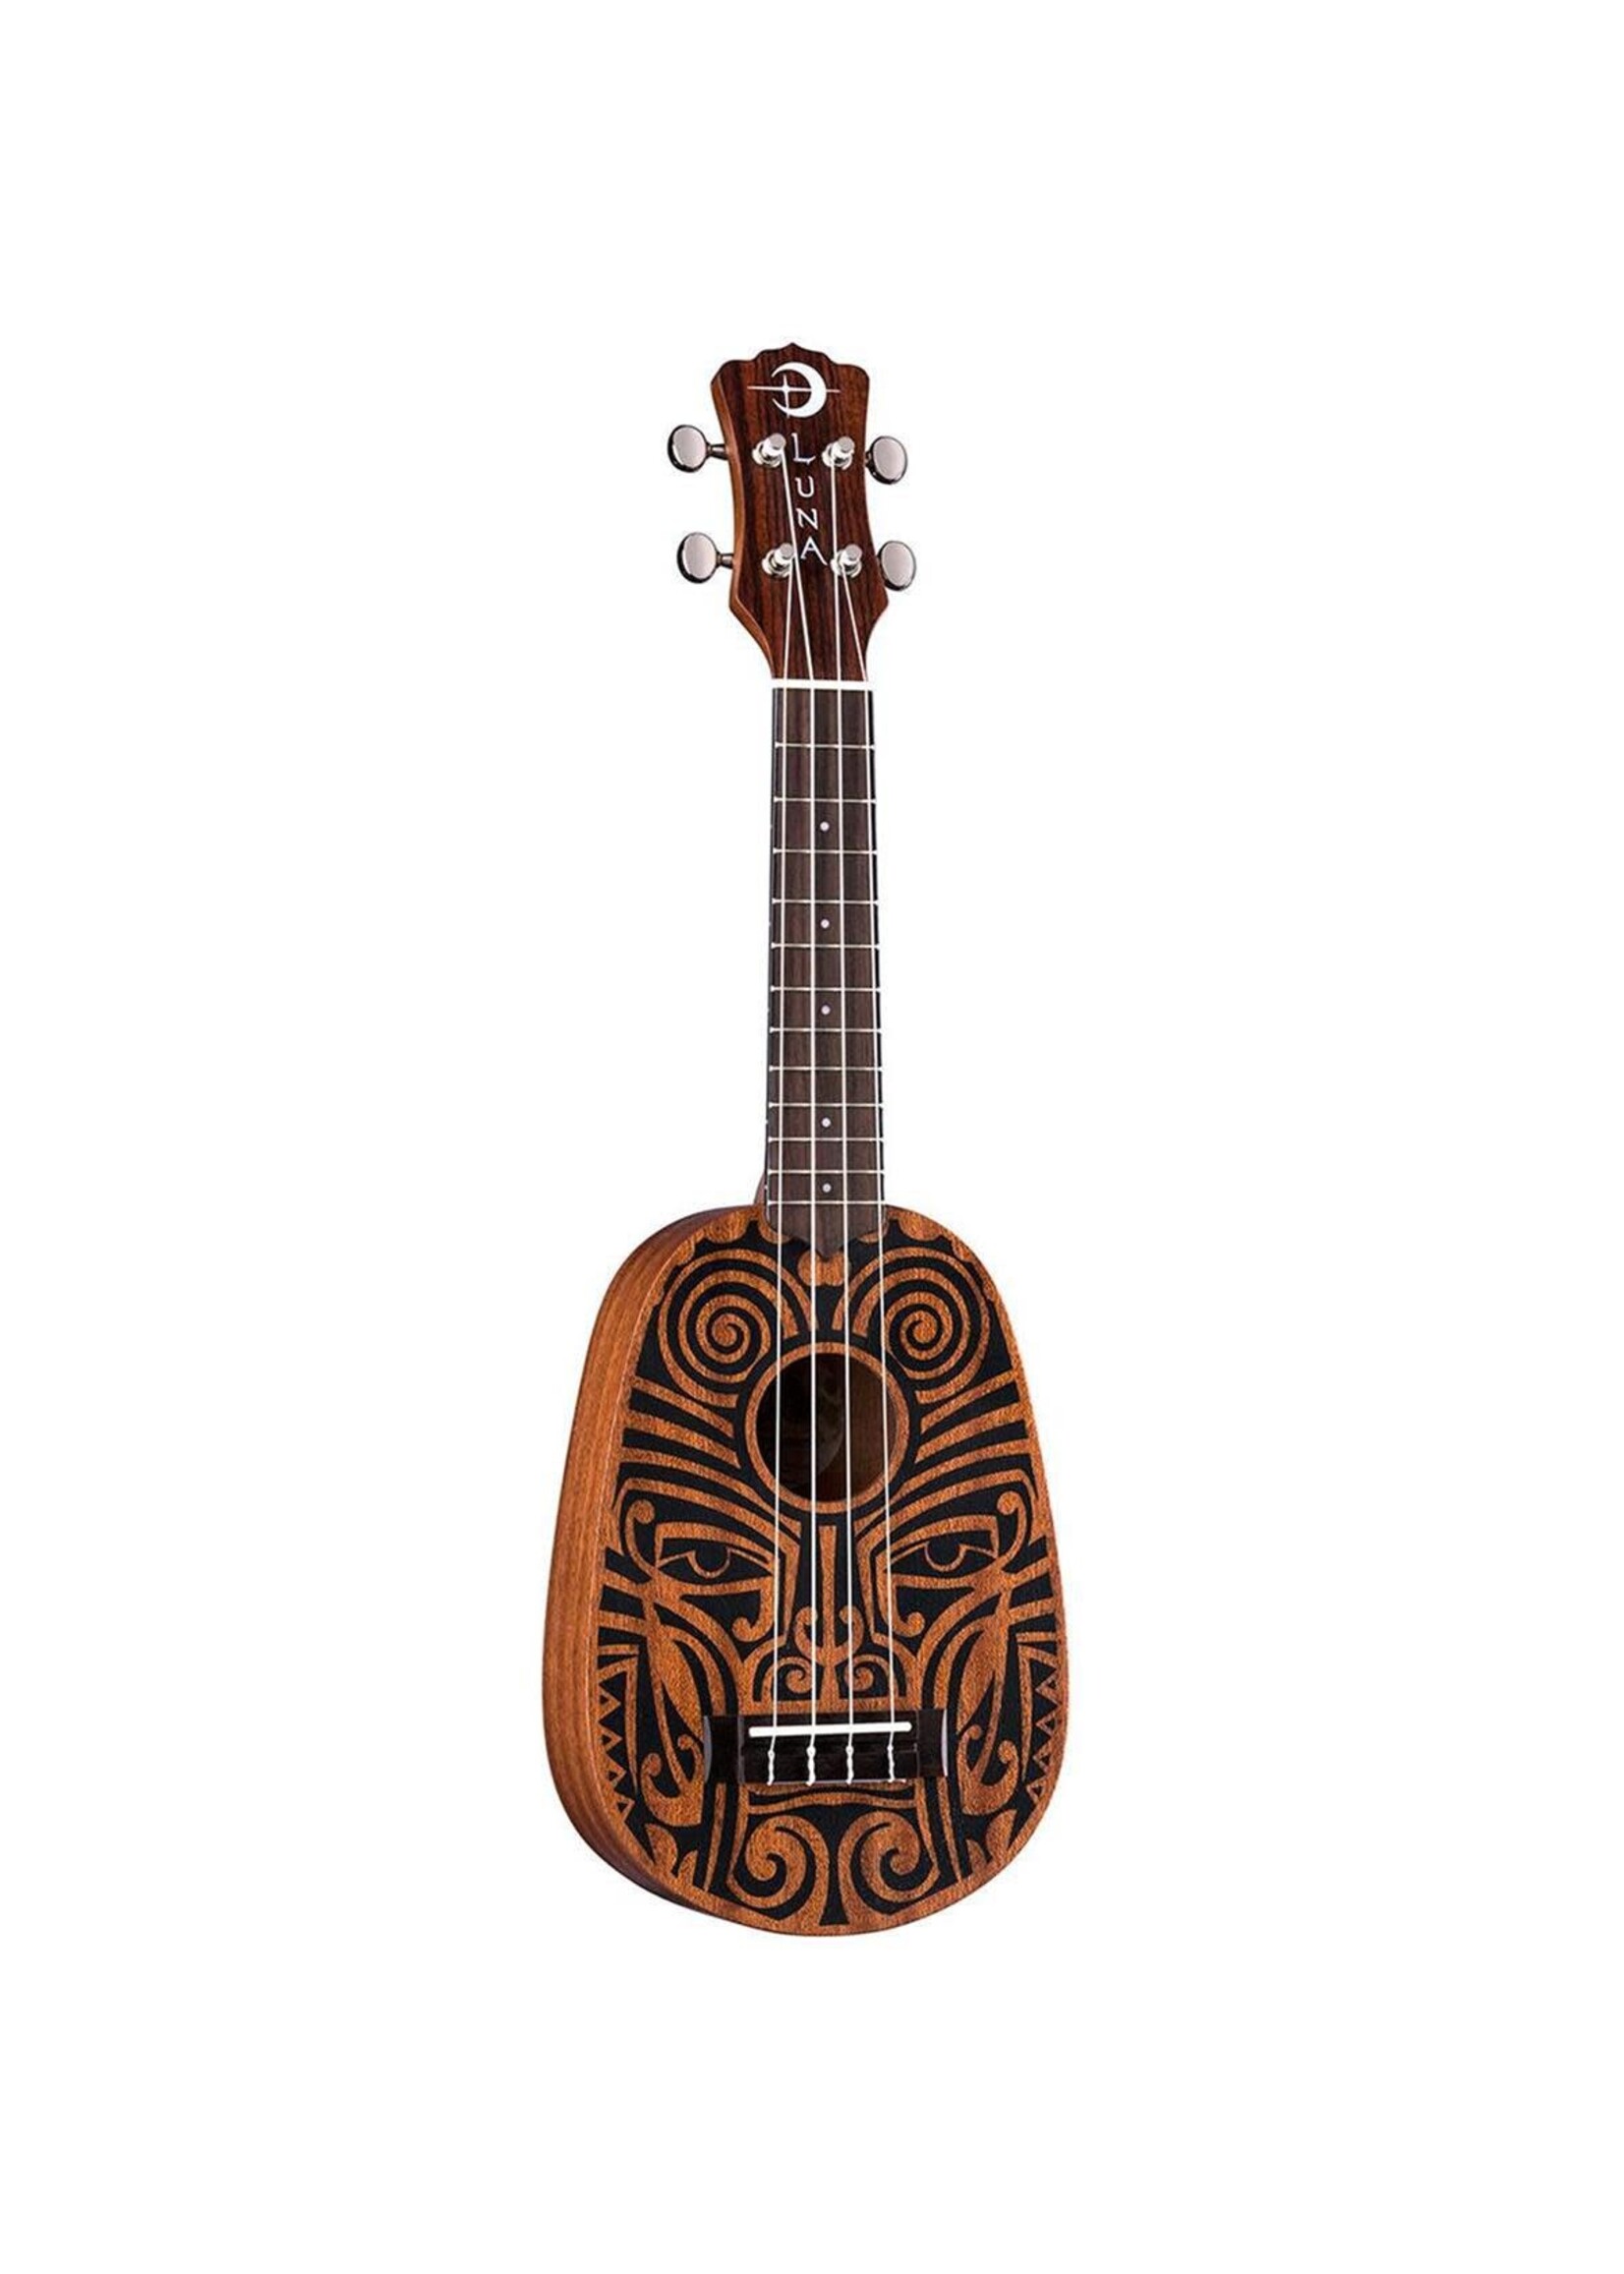 LUNA Luna Uke Tribal Pineapple Mahogany Acoustic Ukulele, 12 Frets, C Shape Neck, Rosewood Fingerboard, Satin Natural